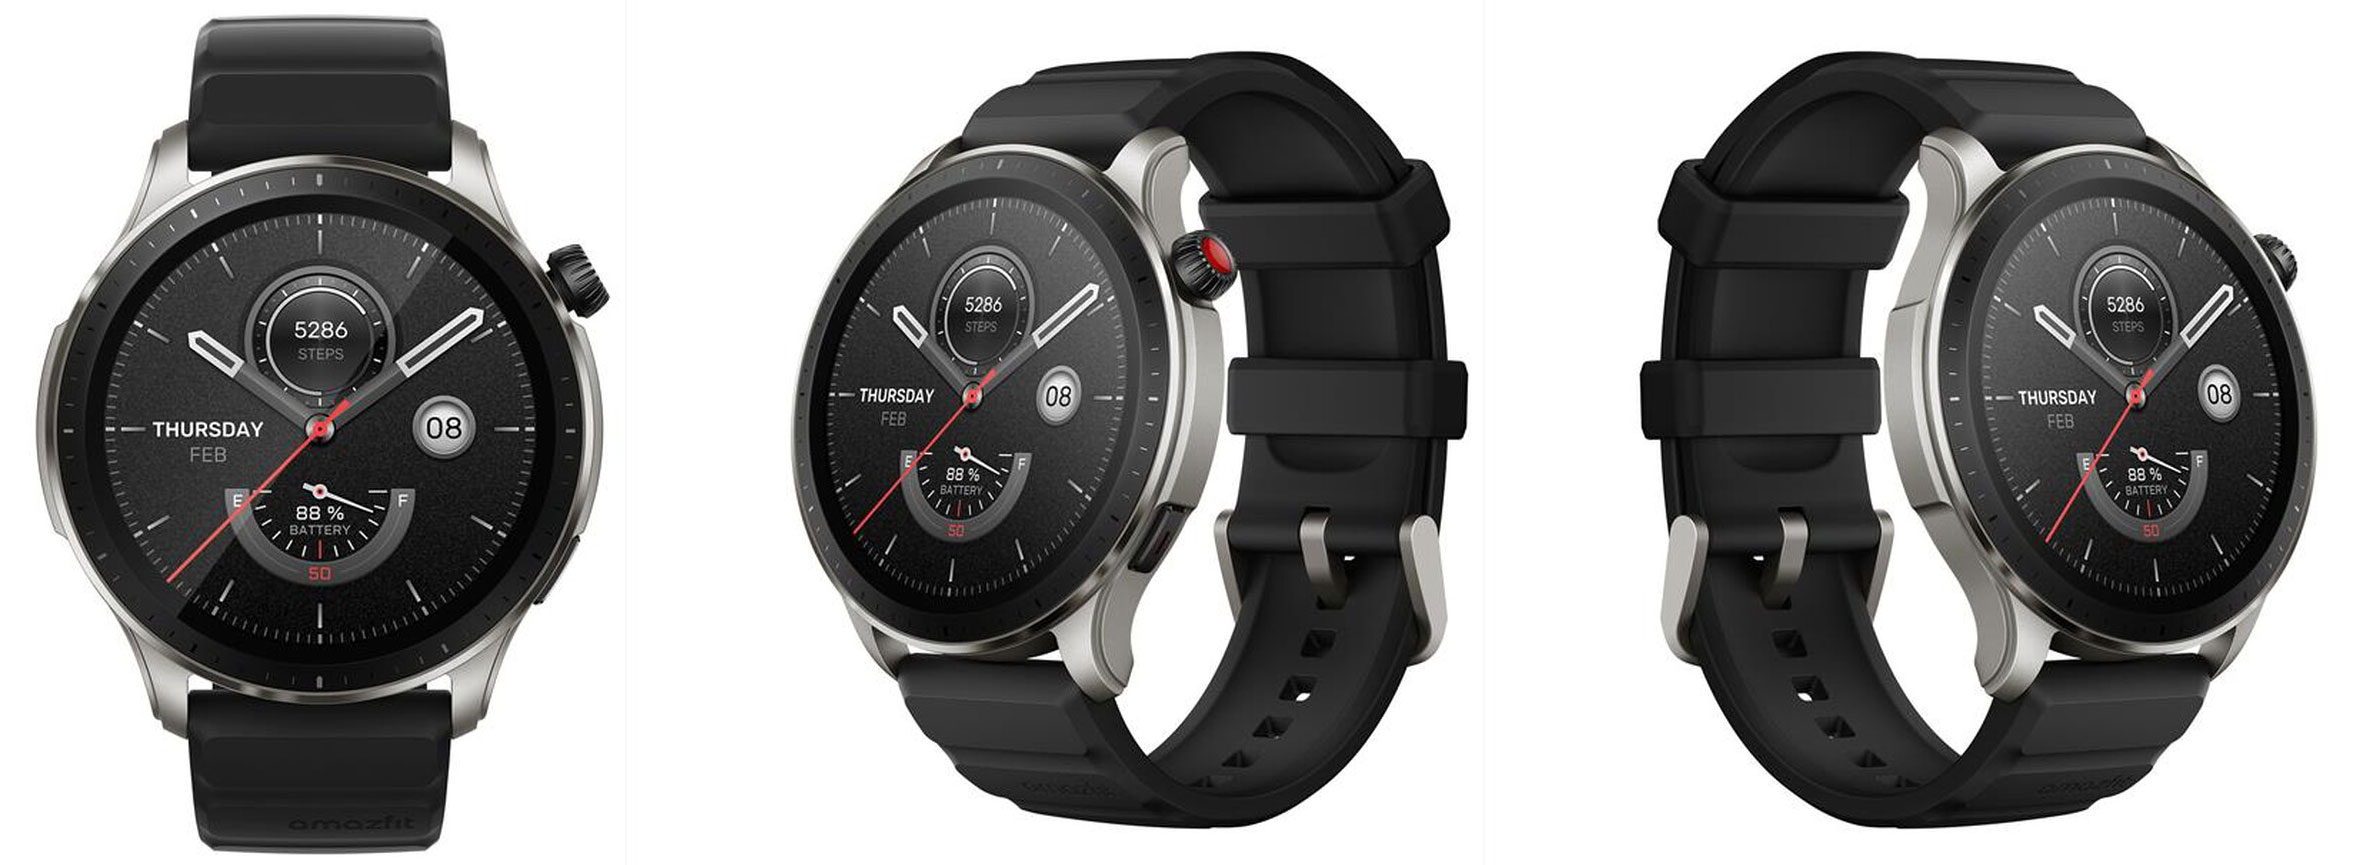 GTR e GTS, arriva la quarta generazione di smartwatch con GPS